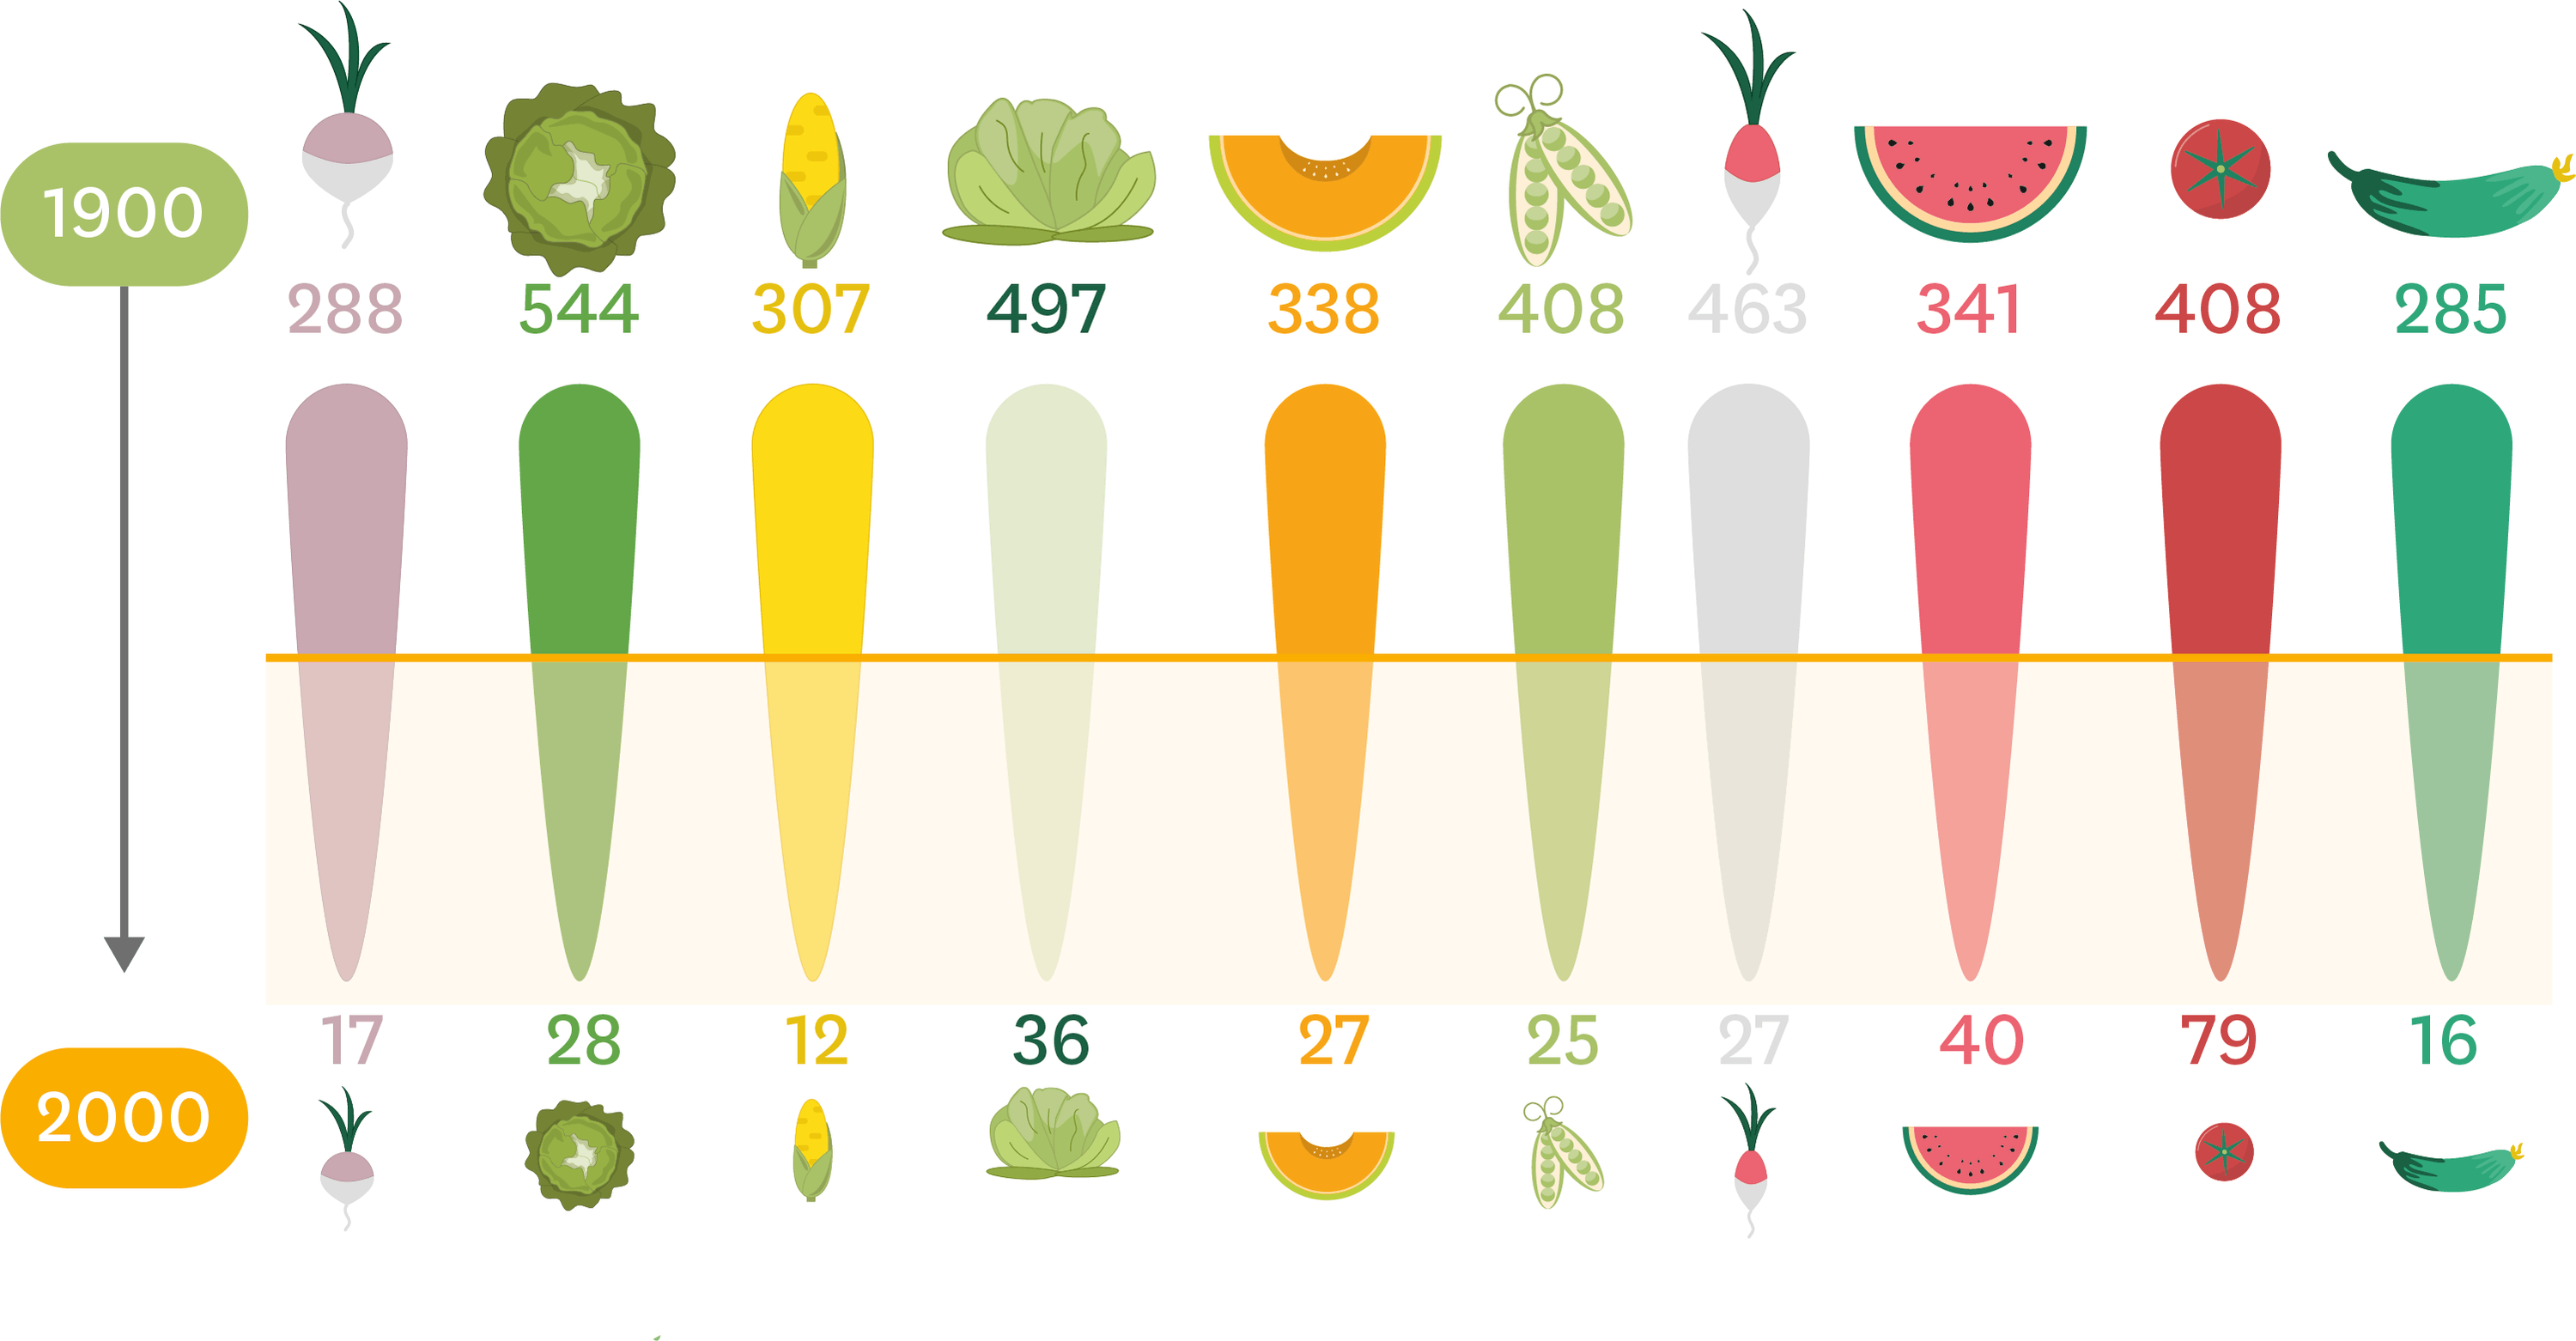 <stamp theme='svt-green1'>Doc. 1</stamp> Le nombre de variétés de fruits et légumes en 1900 et 2000. 